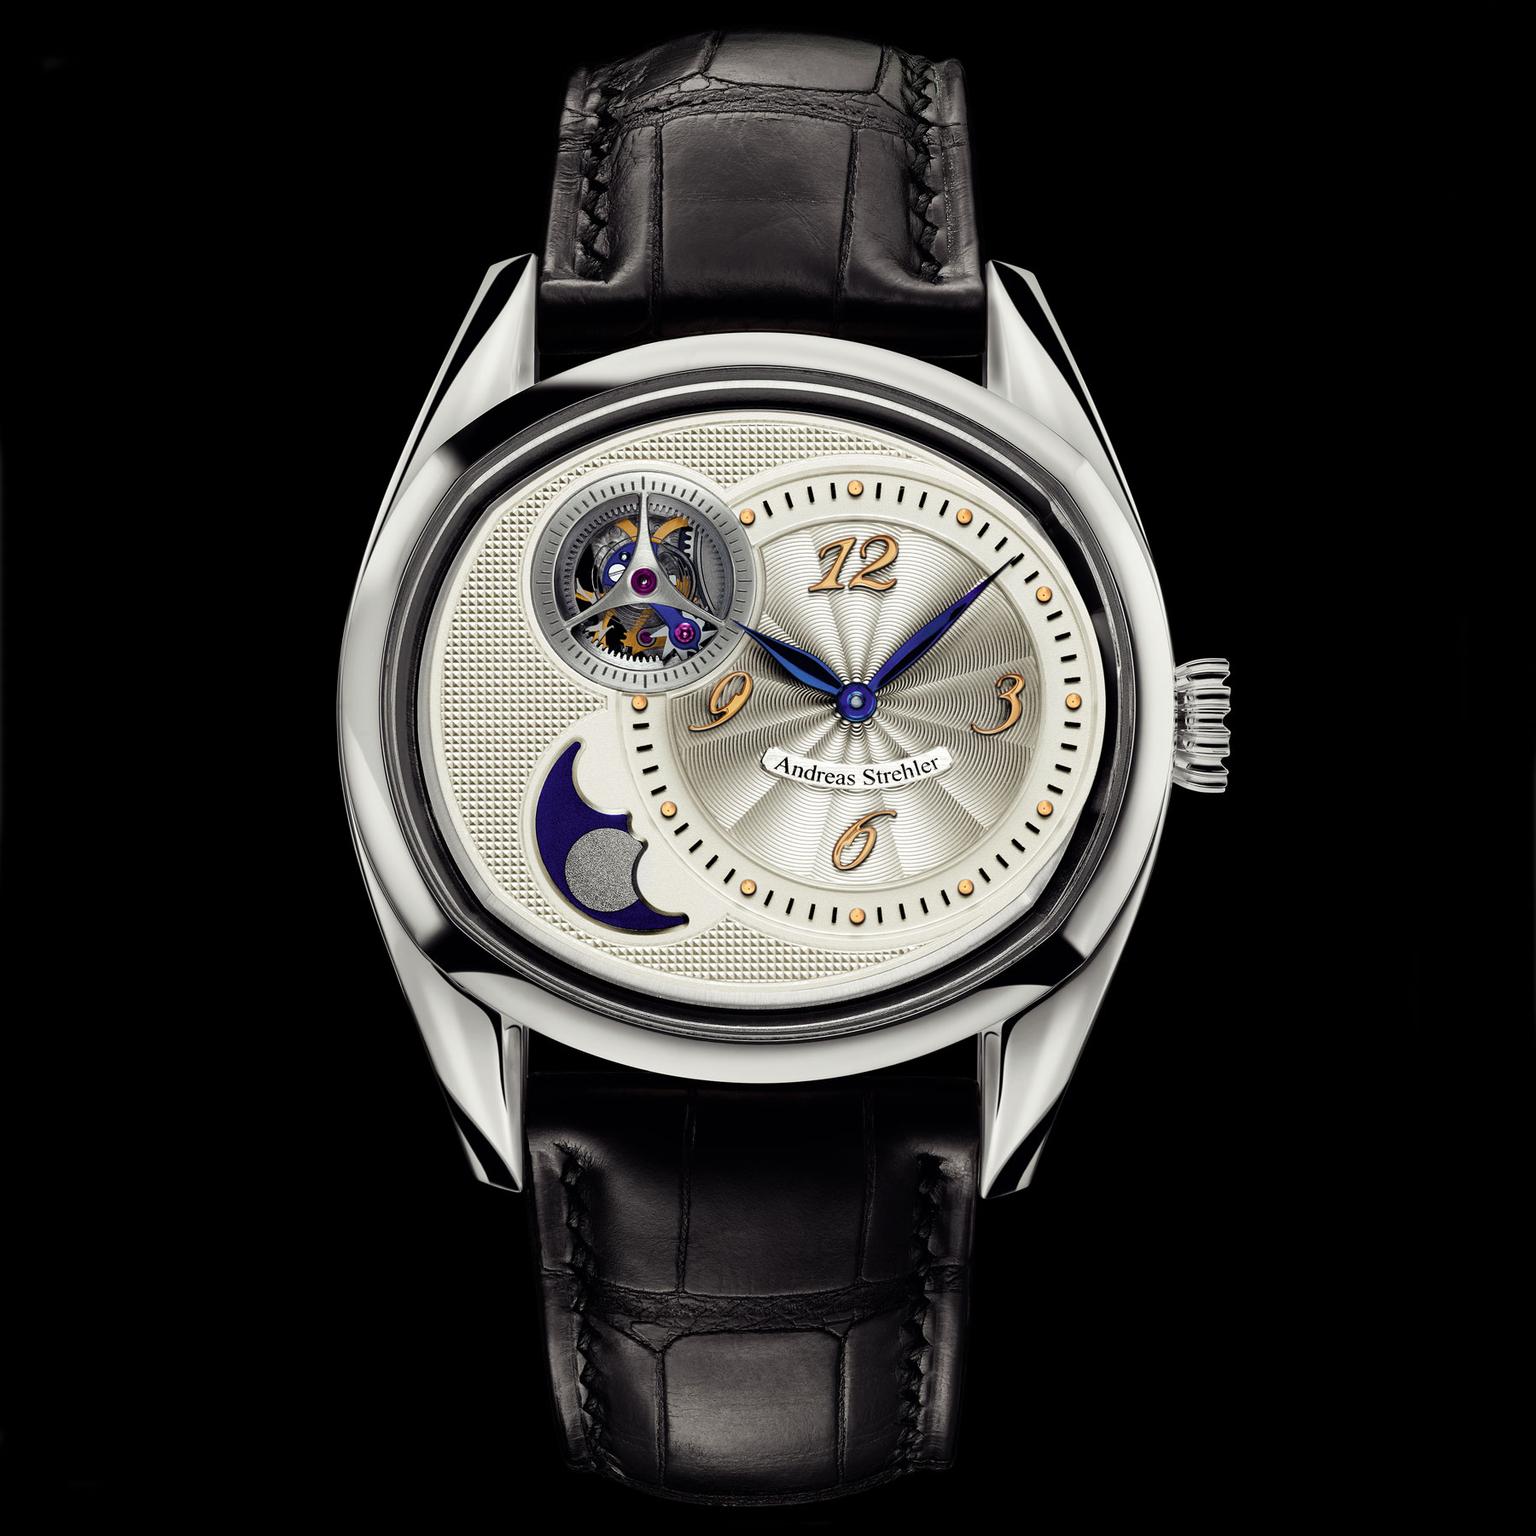 Andreas Strehler Sauterelle à Lune Perpetuelle Platinum watch